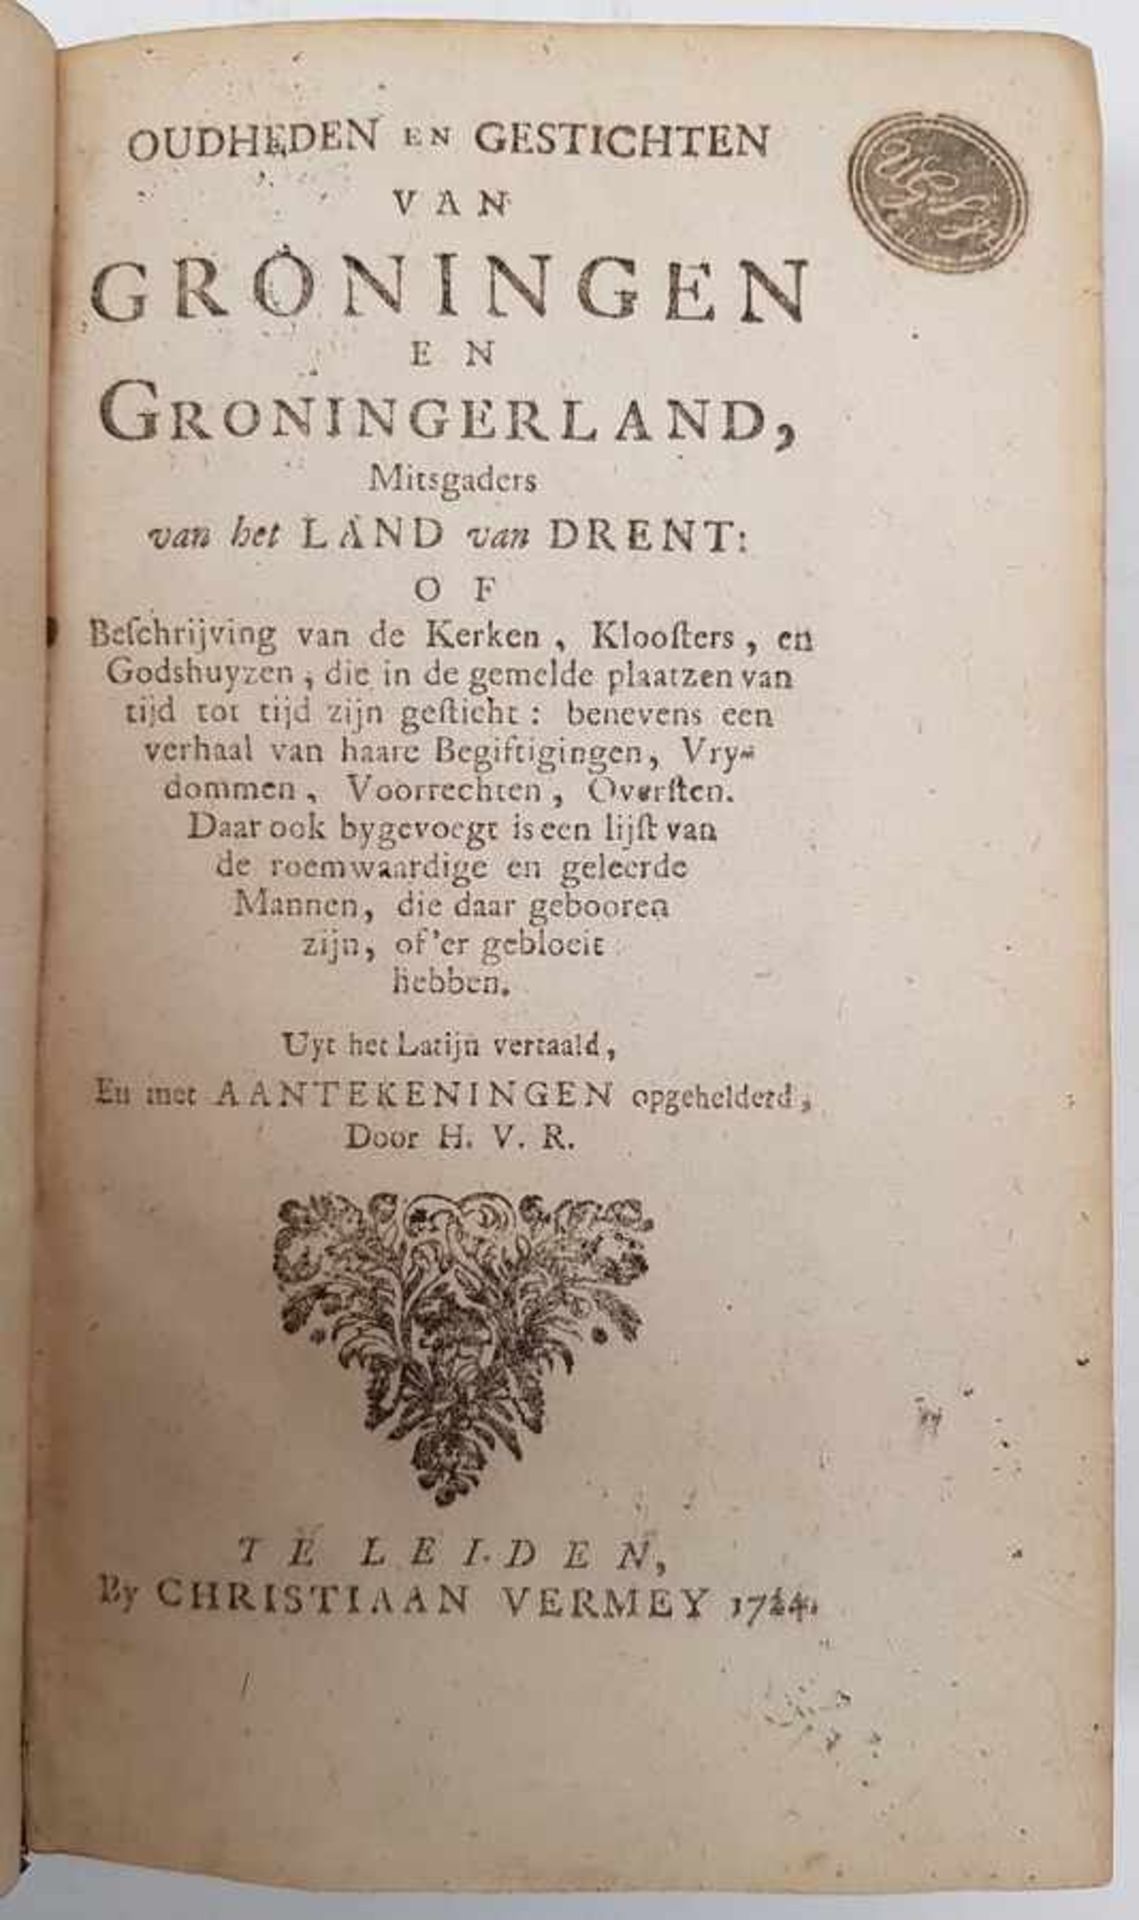 (Boeken) (Groningana) Oudheden en Gestichten van Groningen en GroningerlandH. van Rijn - Oudheden en - Image 7 of 7